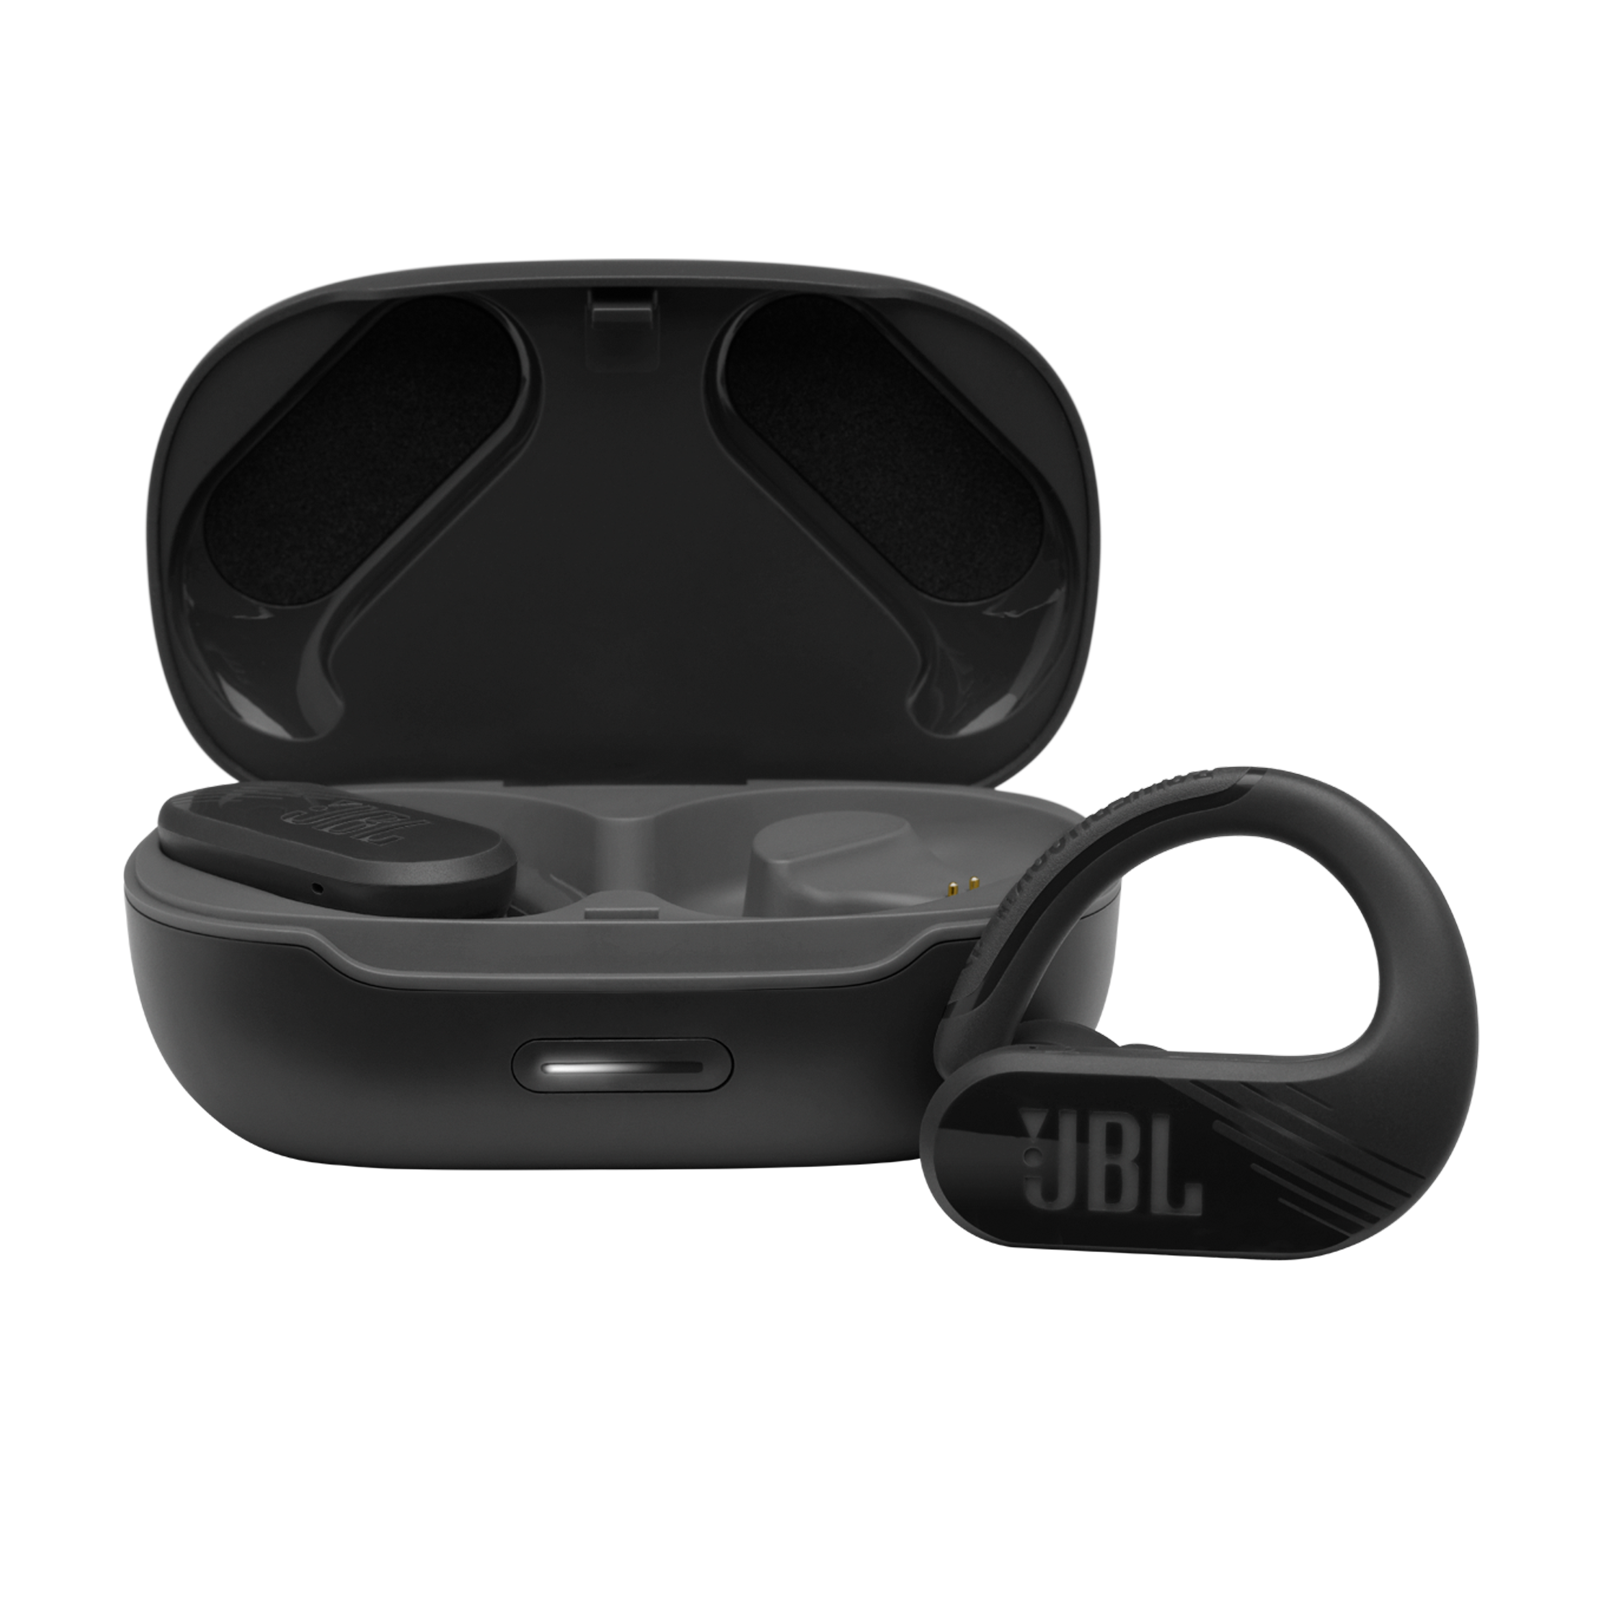 Buy > jbl endurance peak waterproof wireless headphones > in stock